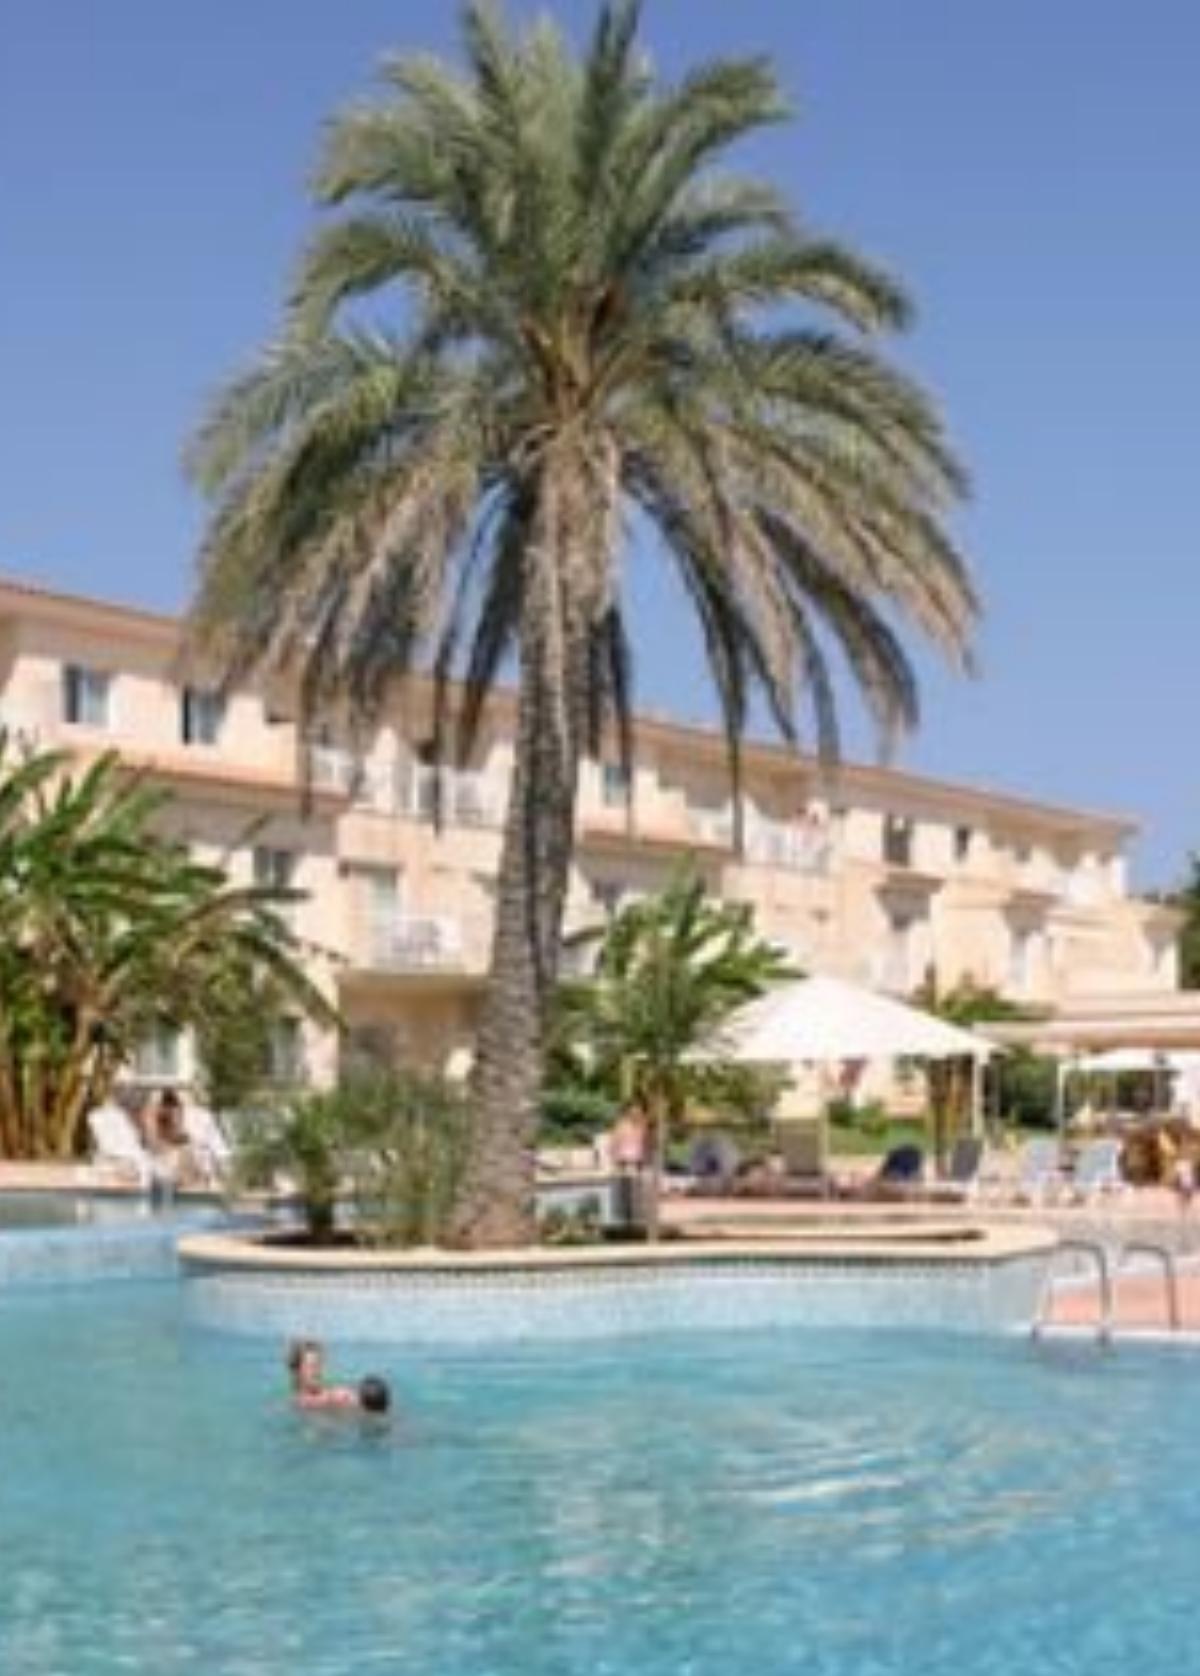 Aparthotel Isla de Cabrera Hotel Majorca Spain